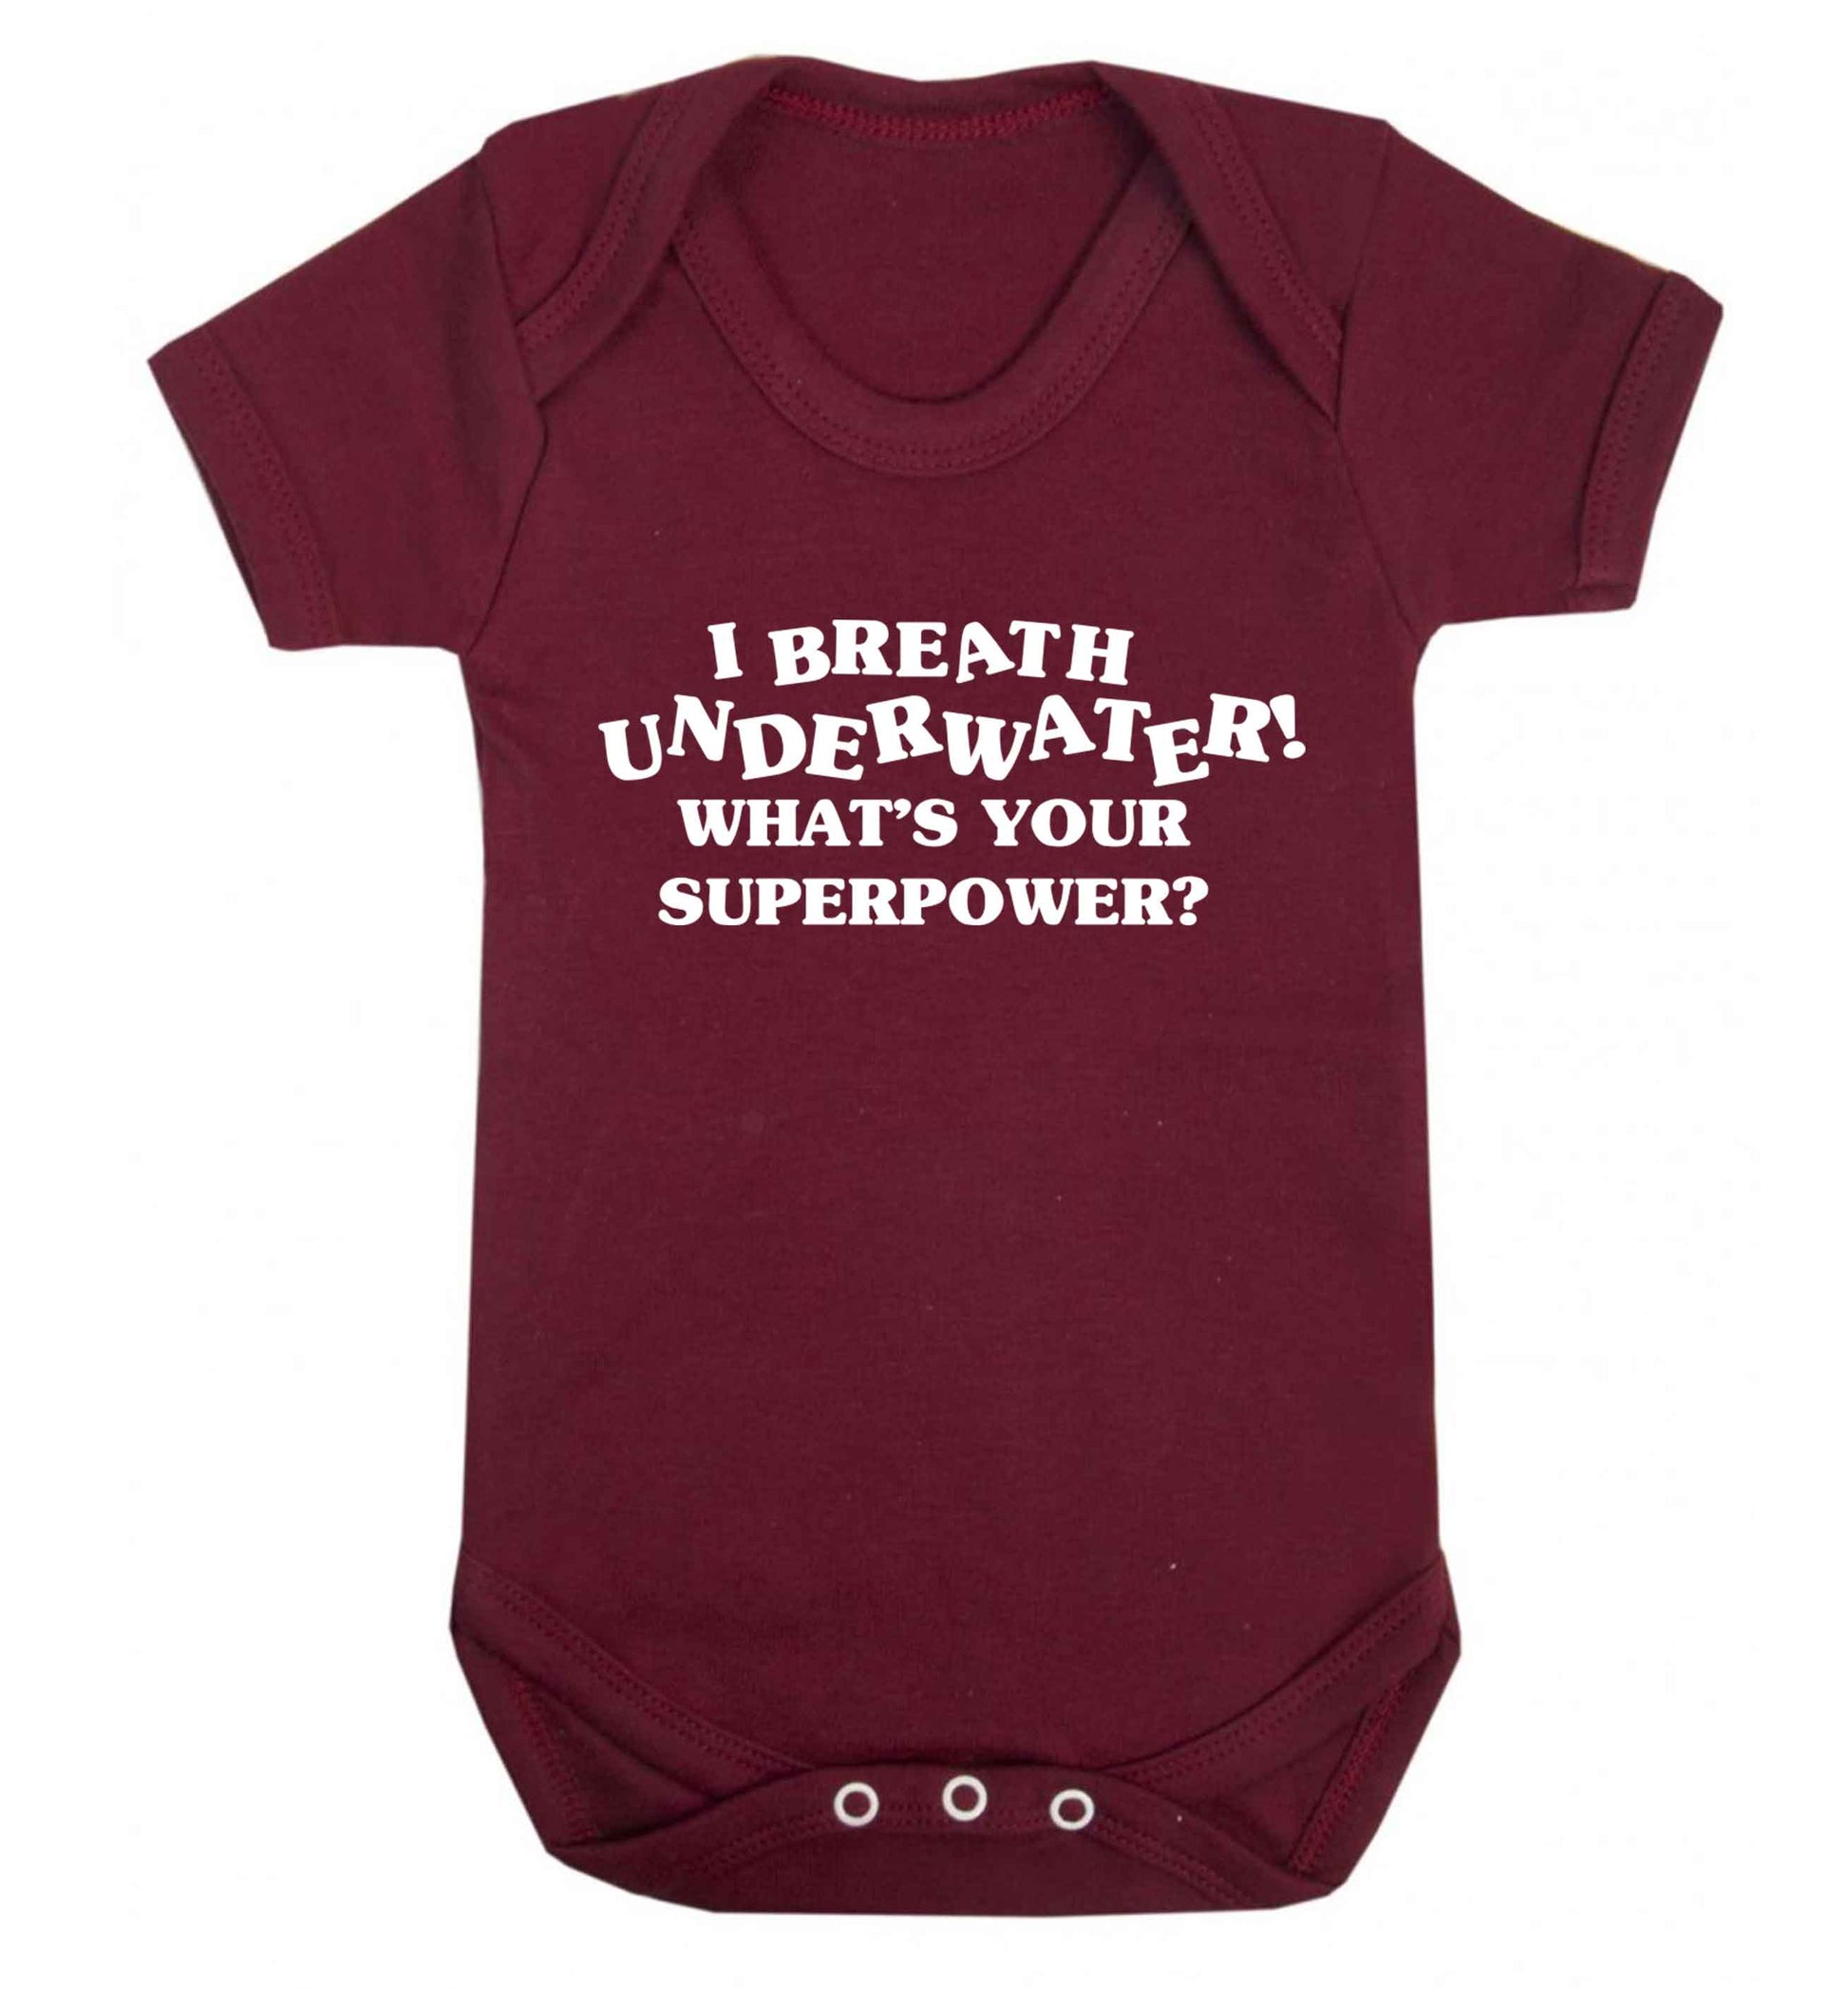 I breath underwater what's your superpower? Baby Vest maroon 18-24 months